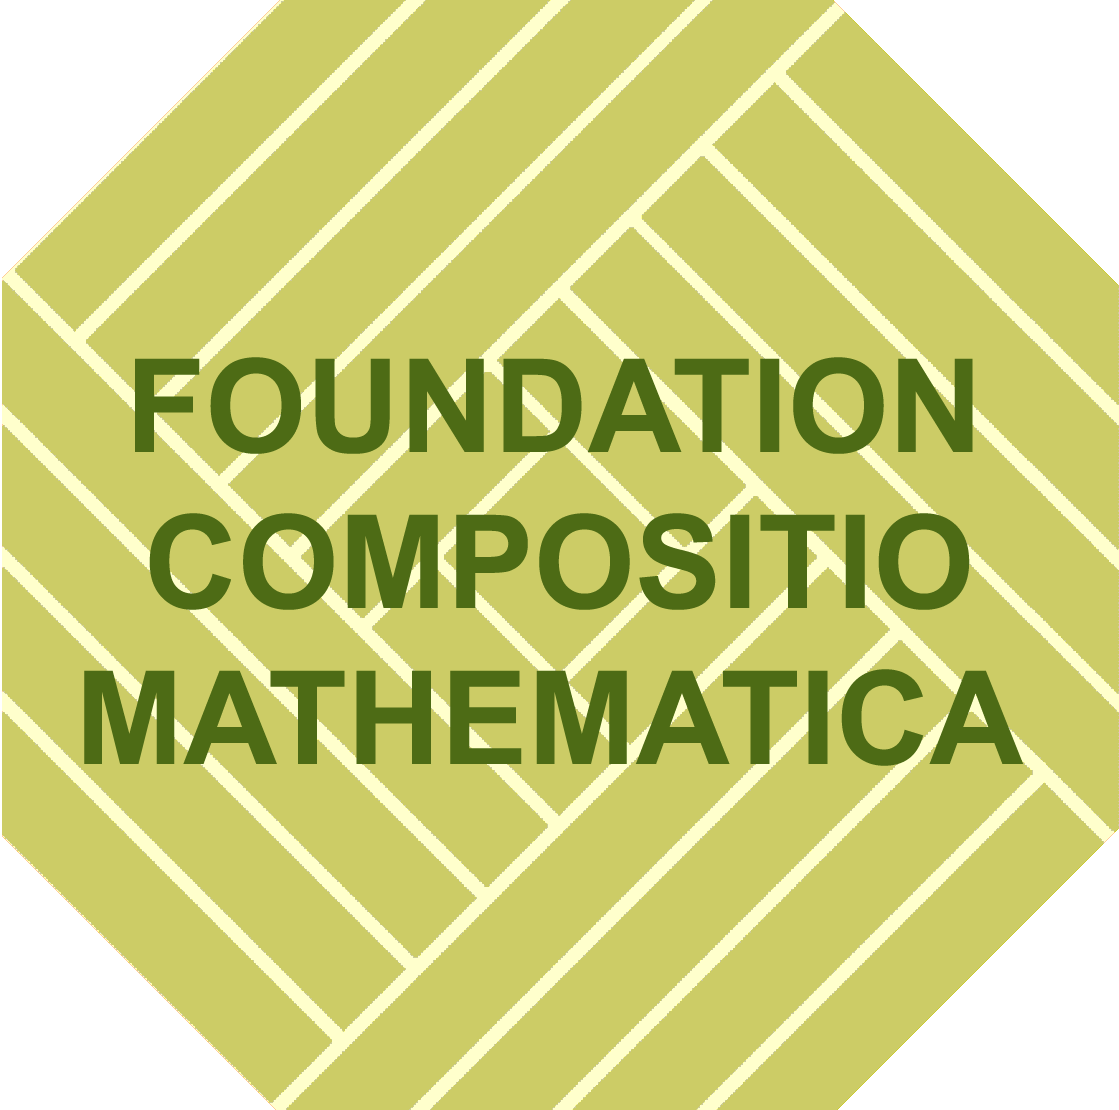 The Foundation Compositio Mathematica logo